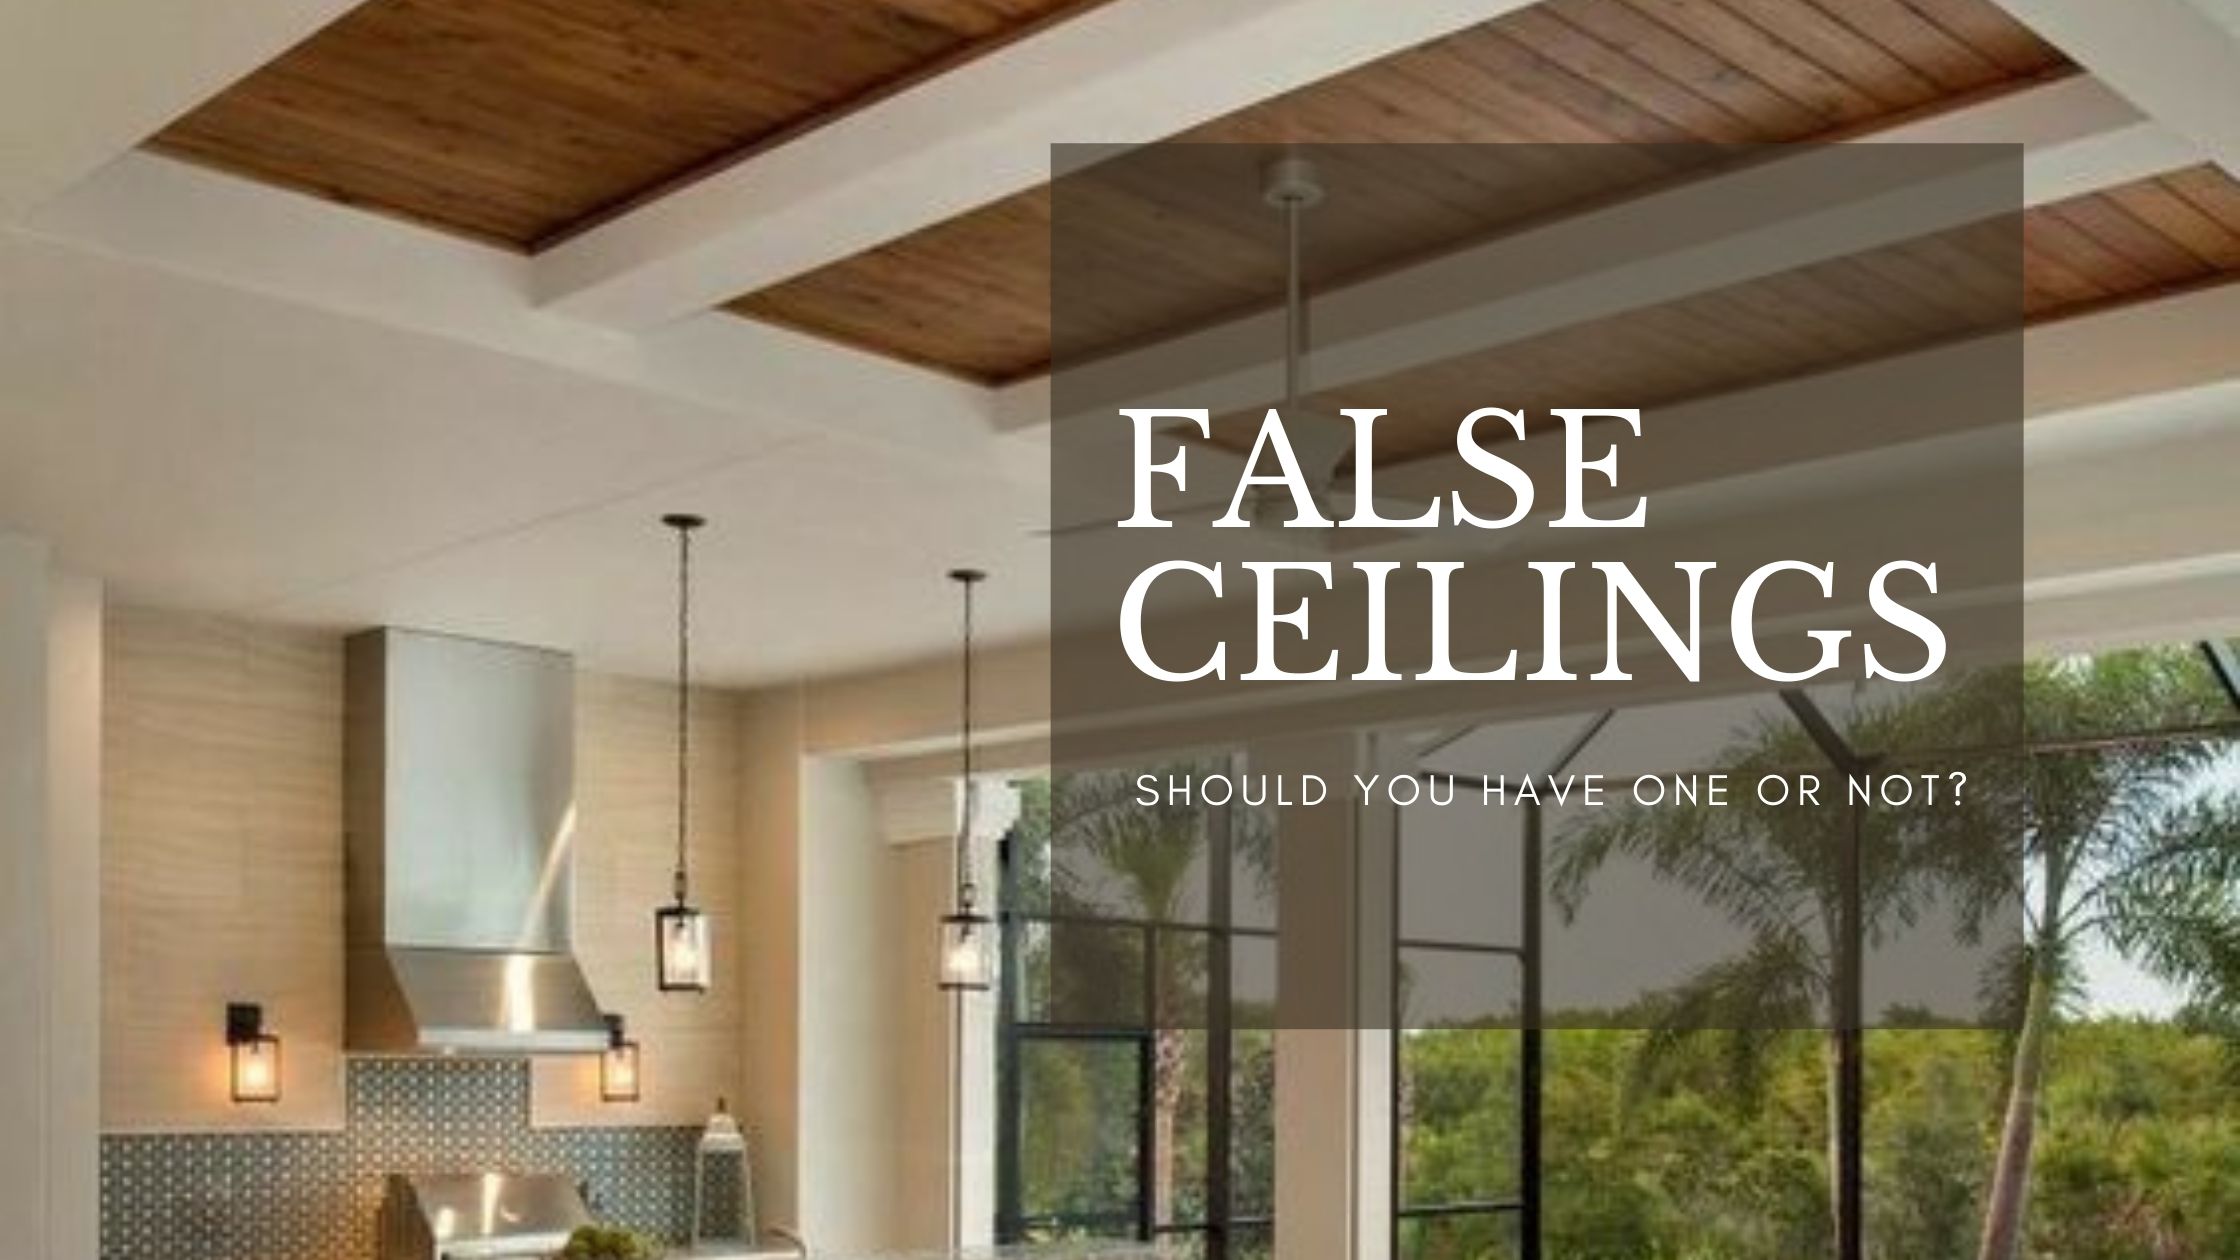 False ceiling